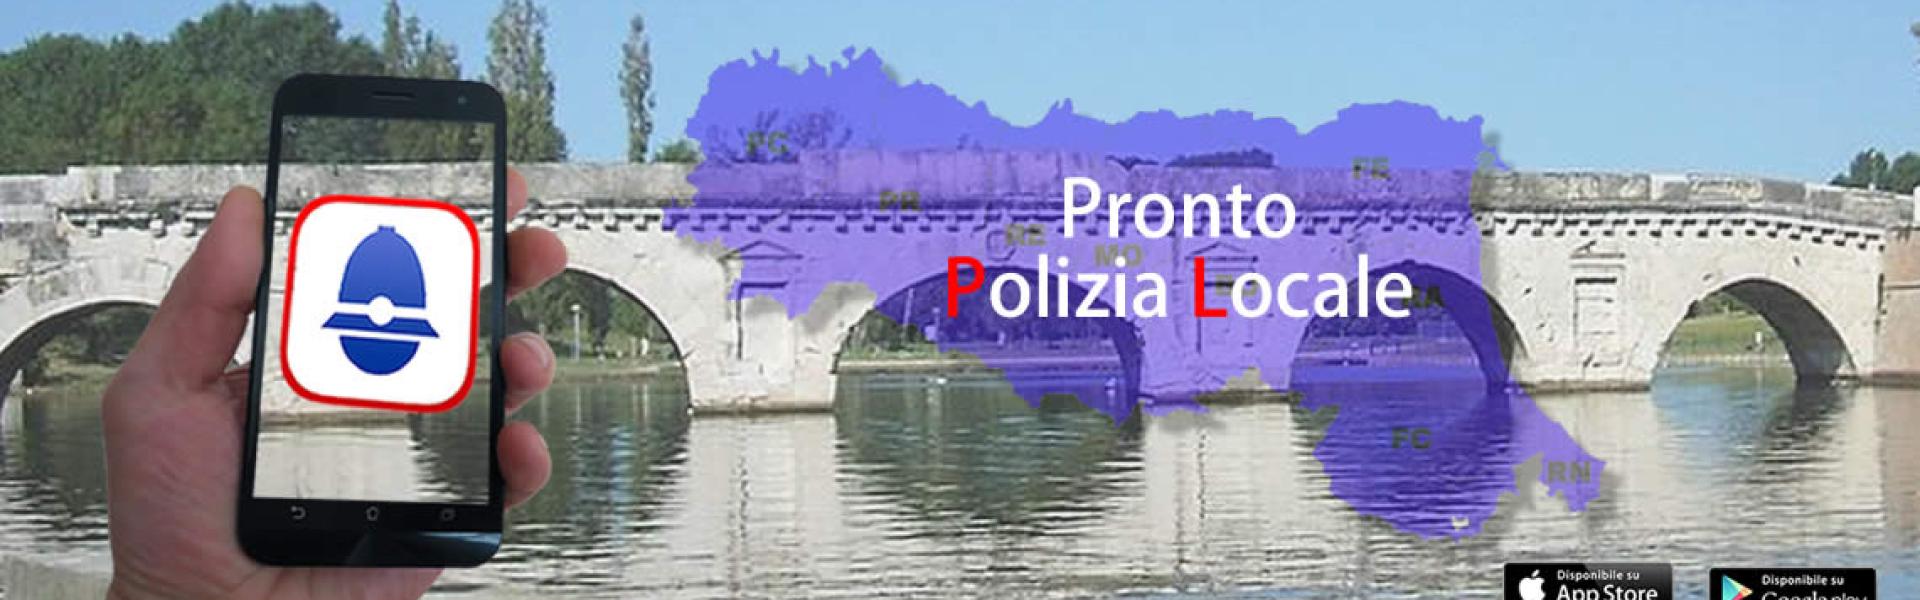 Ponte di tiberio + immagine regione Emilia Romagna + logo Pronto Polizia Locale